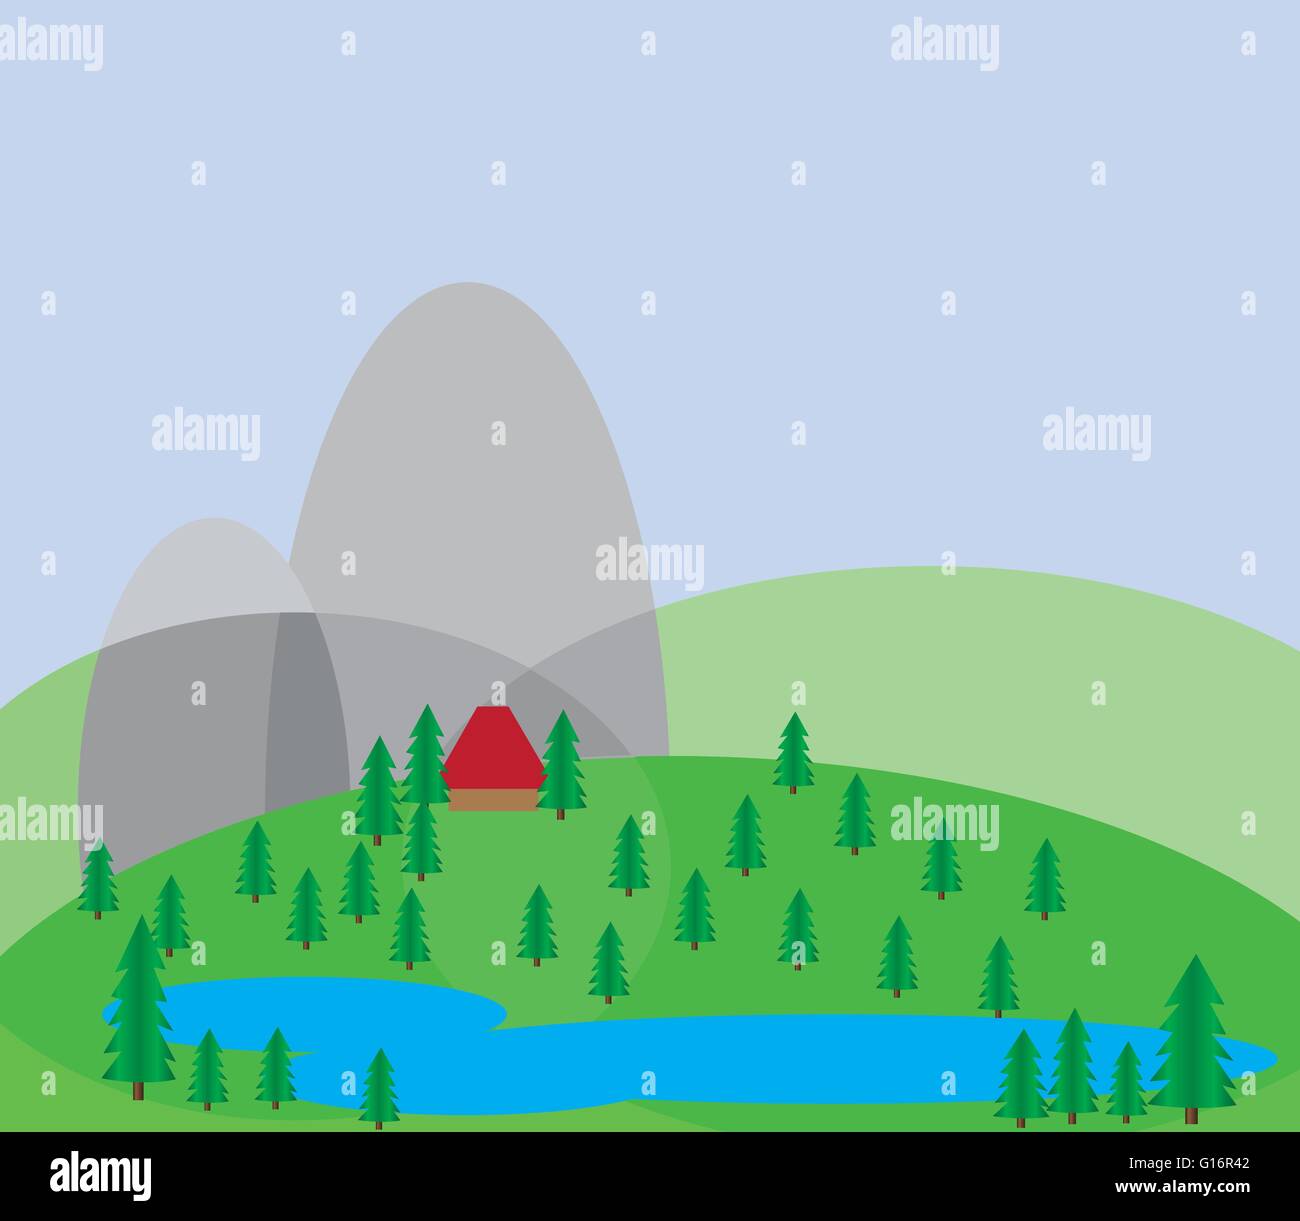 Vert des arbres croissant sur les collines d'argent sur un fond bleu et une petite maison rouge à proximité d'un lac bleu. Vecteur de fond numérique mauvais Illustration de Vecteur